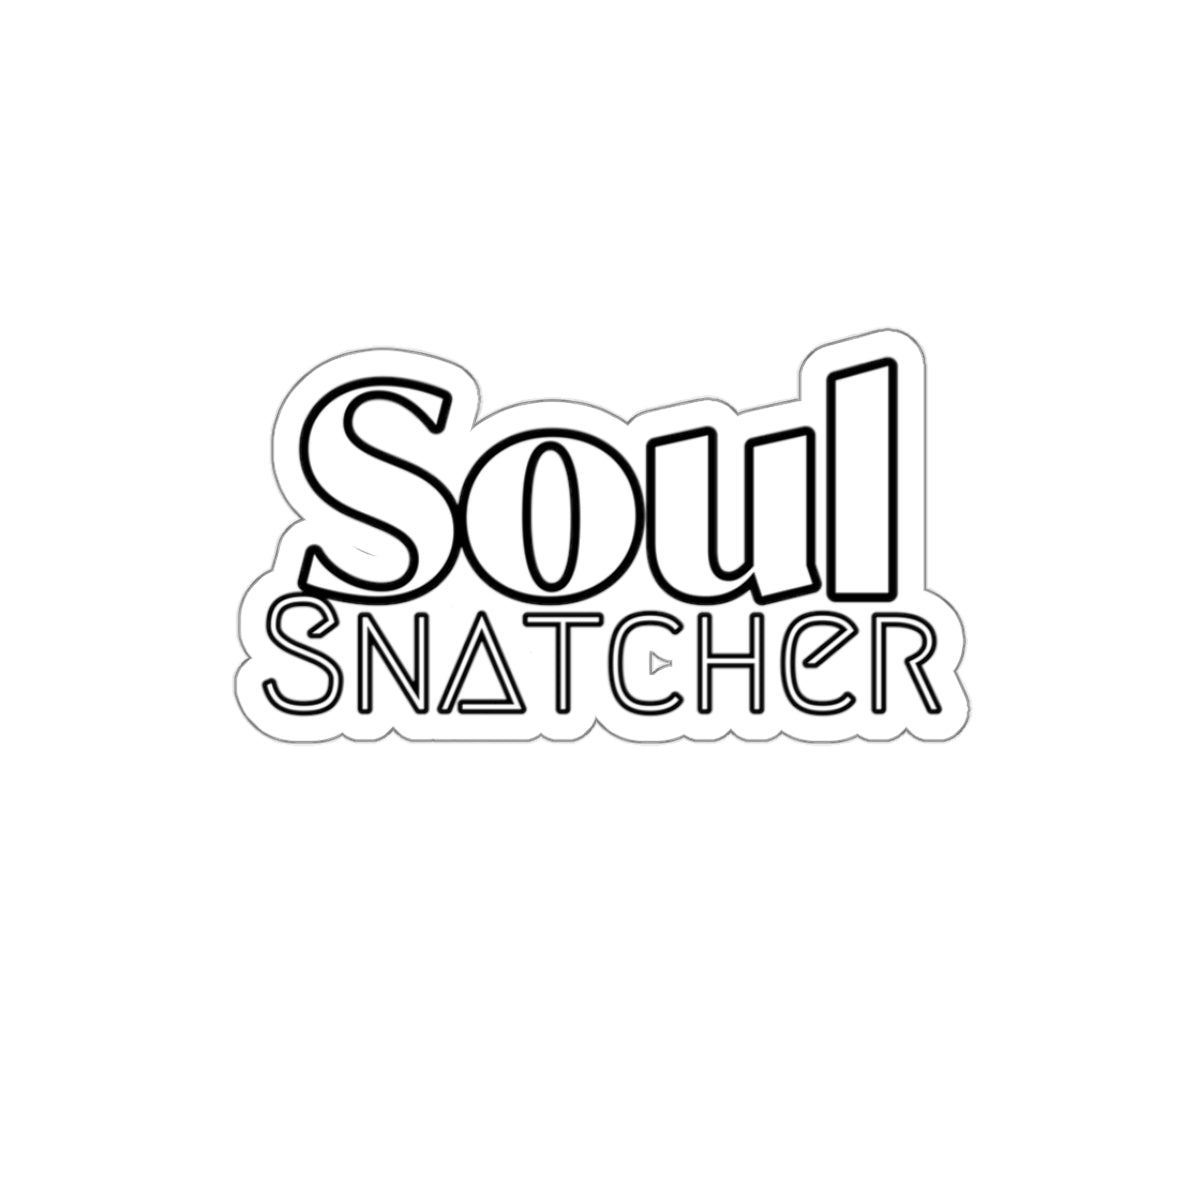 SOUL SNATCHER Decal/Sticker - The Bible Junkies®